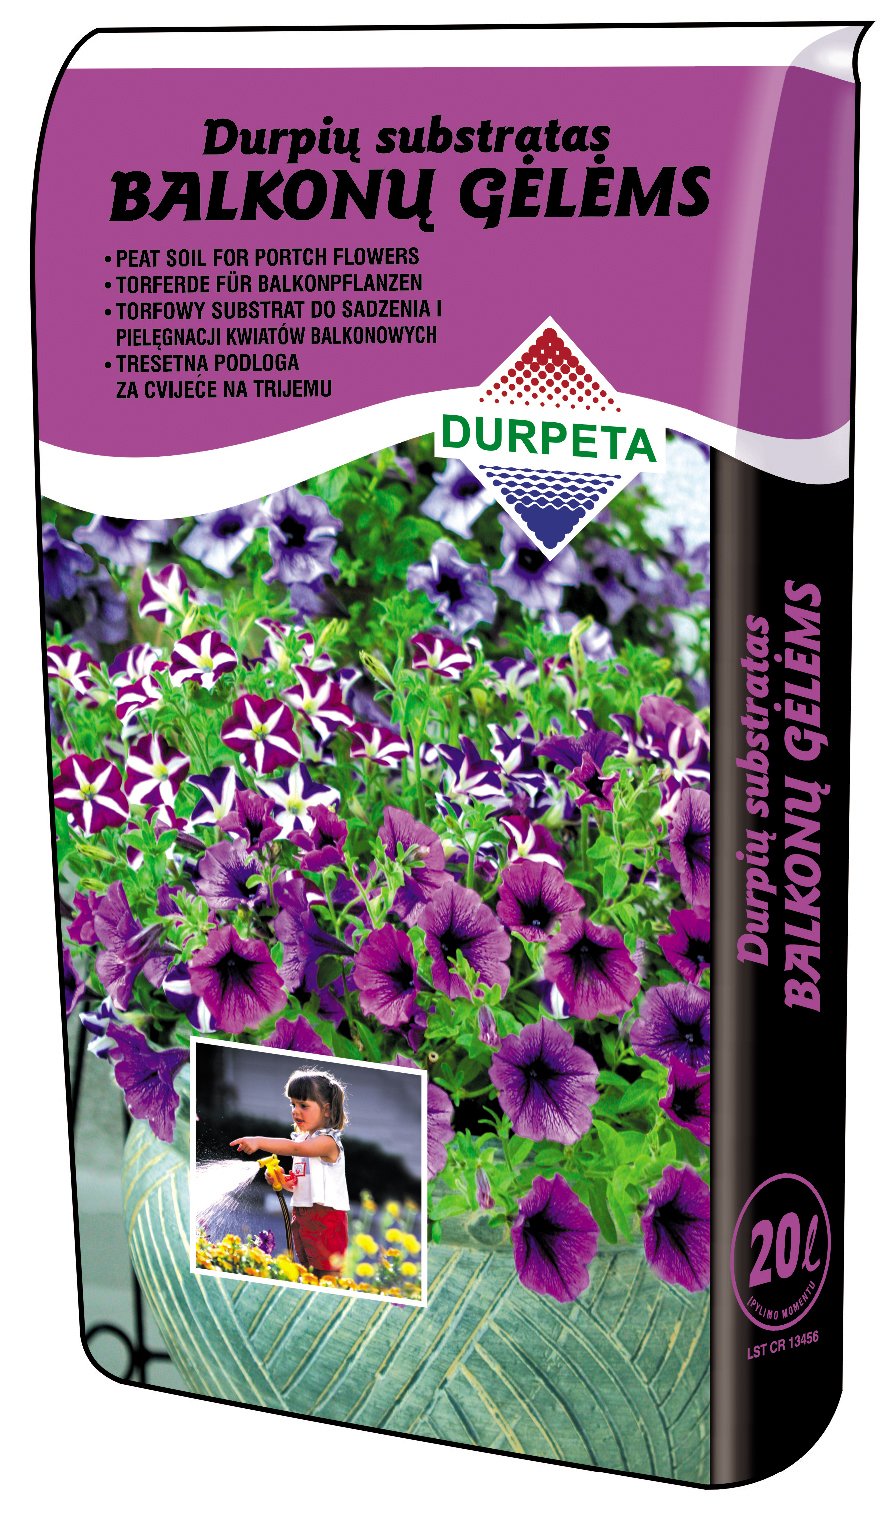 Balkono gėlių durpių substratas DURPETA, 20 l - 1